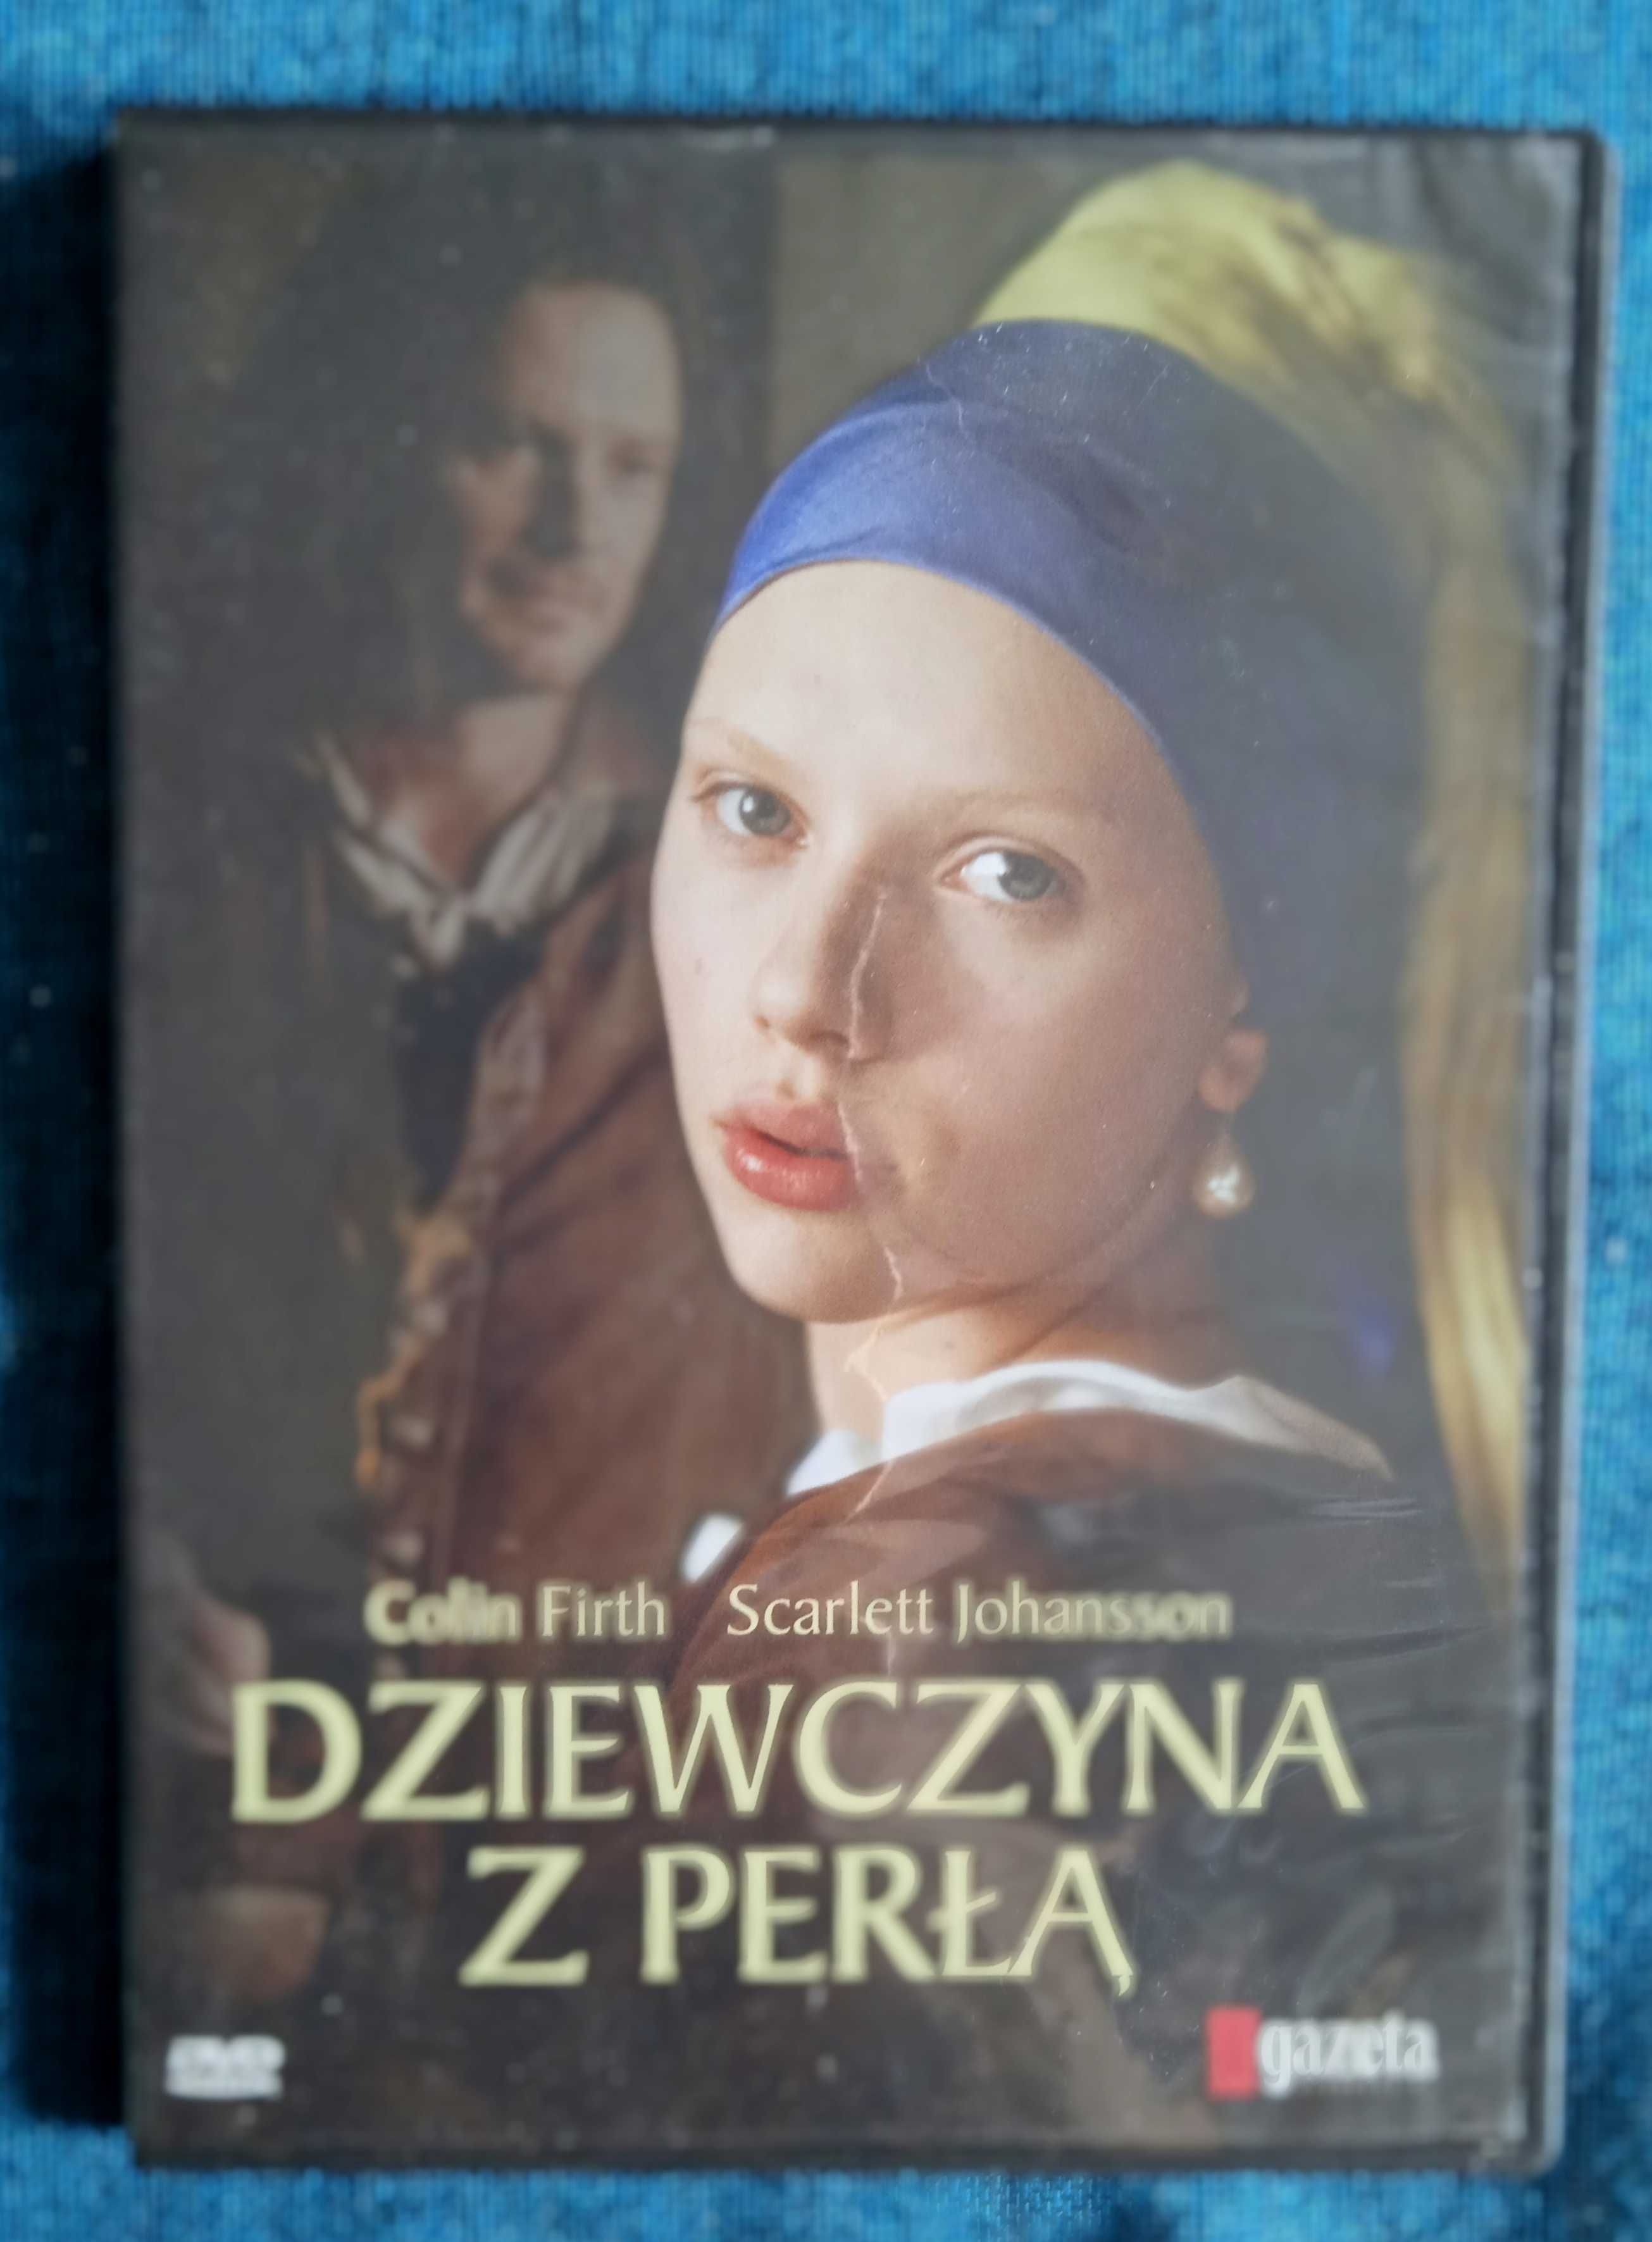 film DVD "Dziewczyna z perłą" i inne filmy - zobacz tytuły